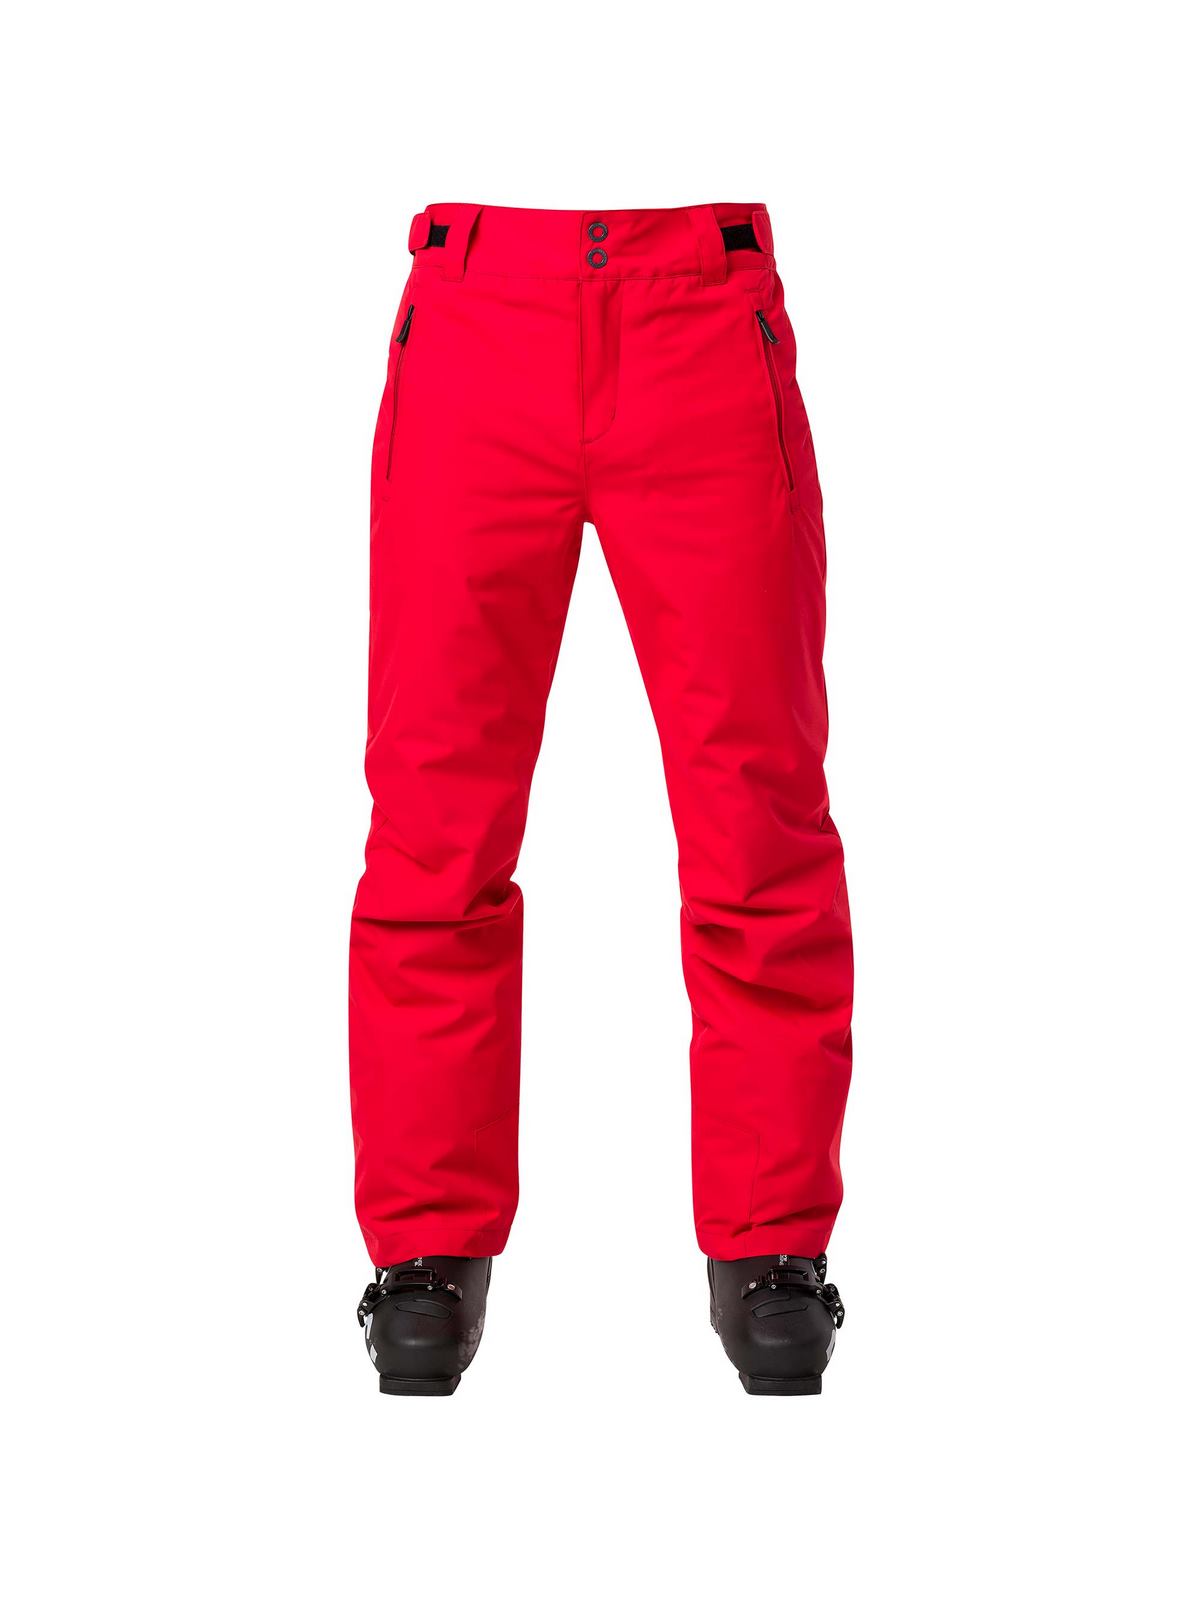 Spodnie narciarskie ROSSIGNOL Rapide Pant czerwony